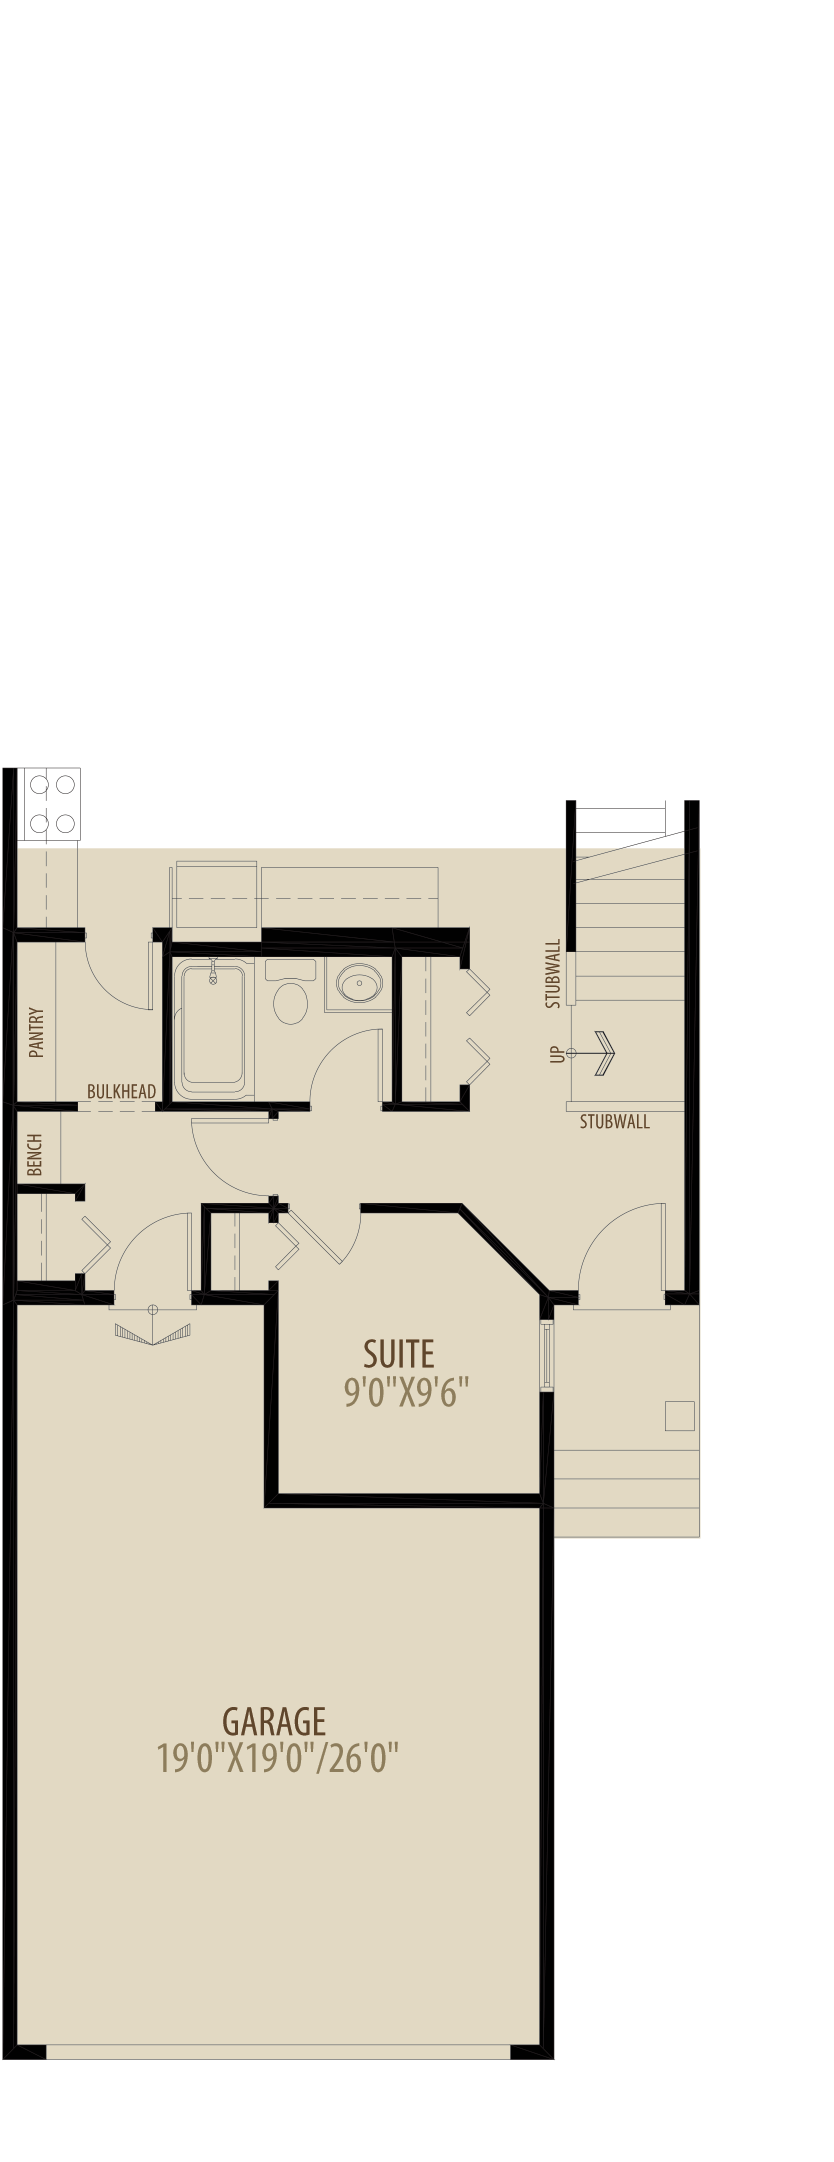 Main Floor Suite Adds 70 sq ft